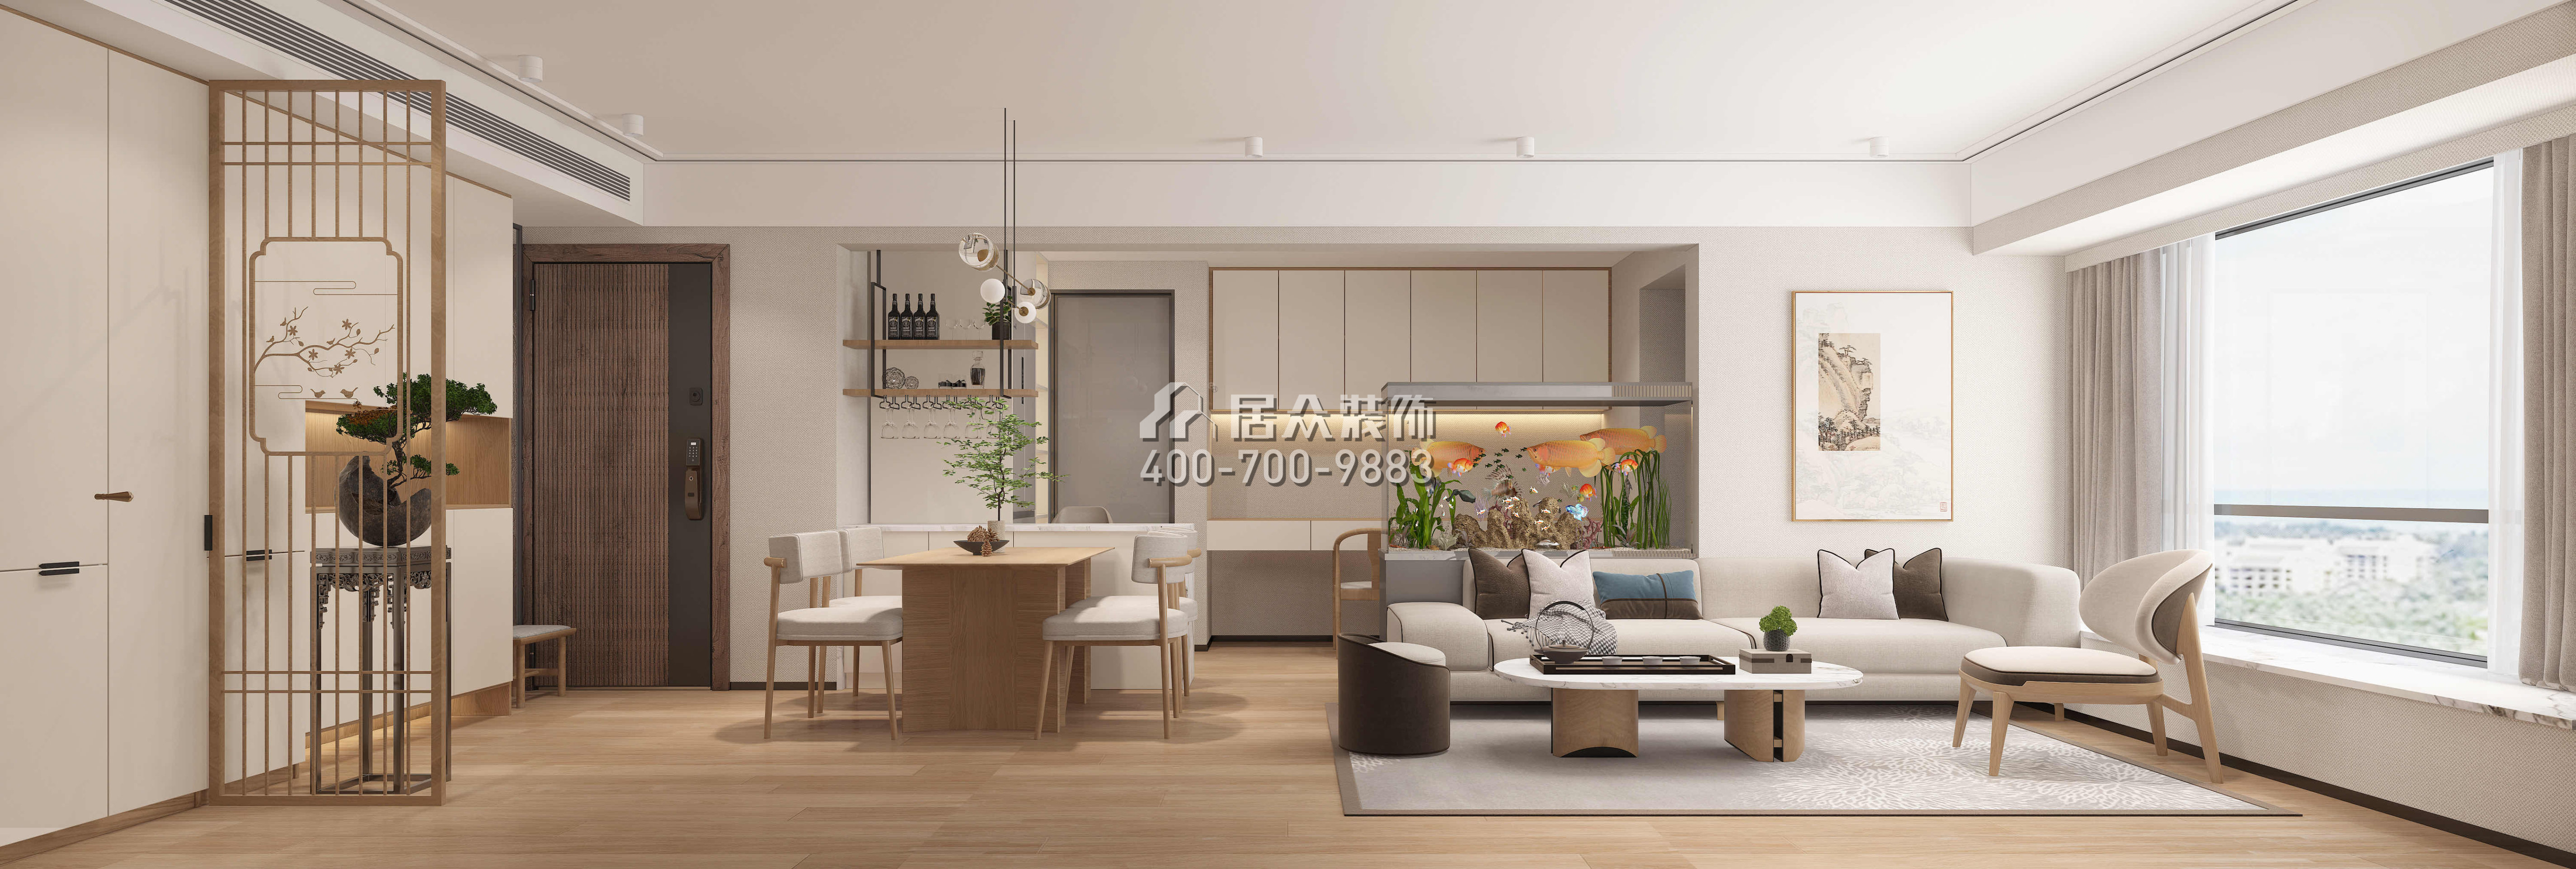 现代城梦想家园71平方米中式风格平层户型客厅装修效果图